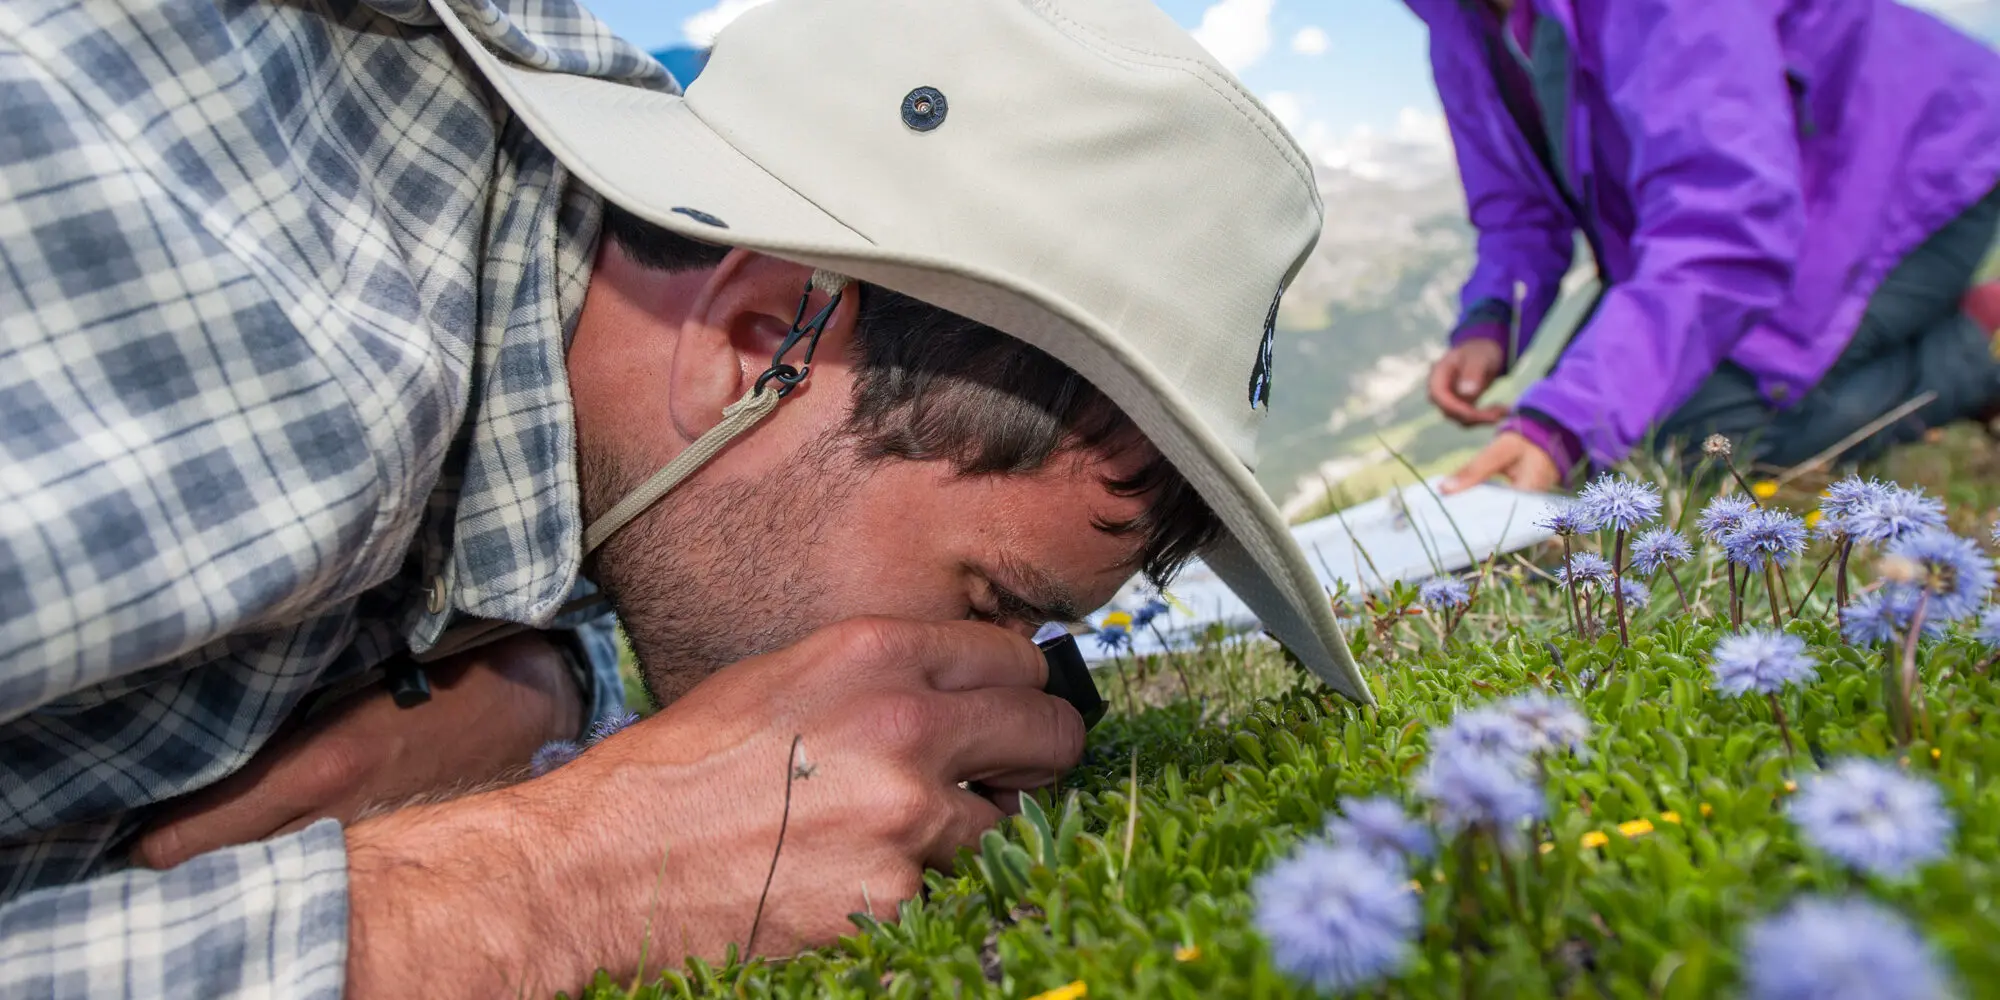 Kniender Botaniker untersucht mit der Lupe die Pflanzen am Boden